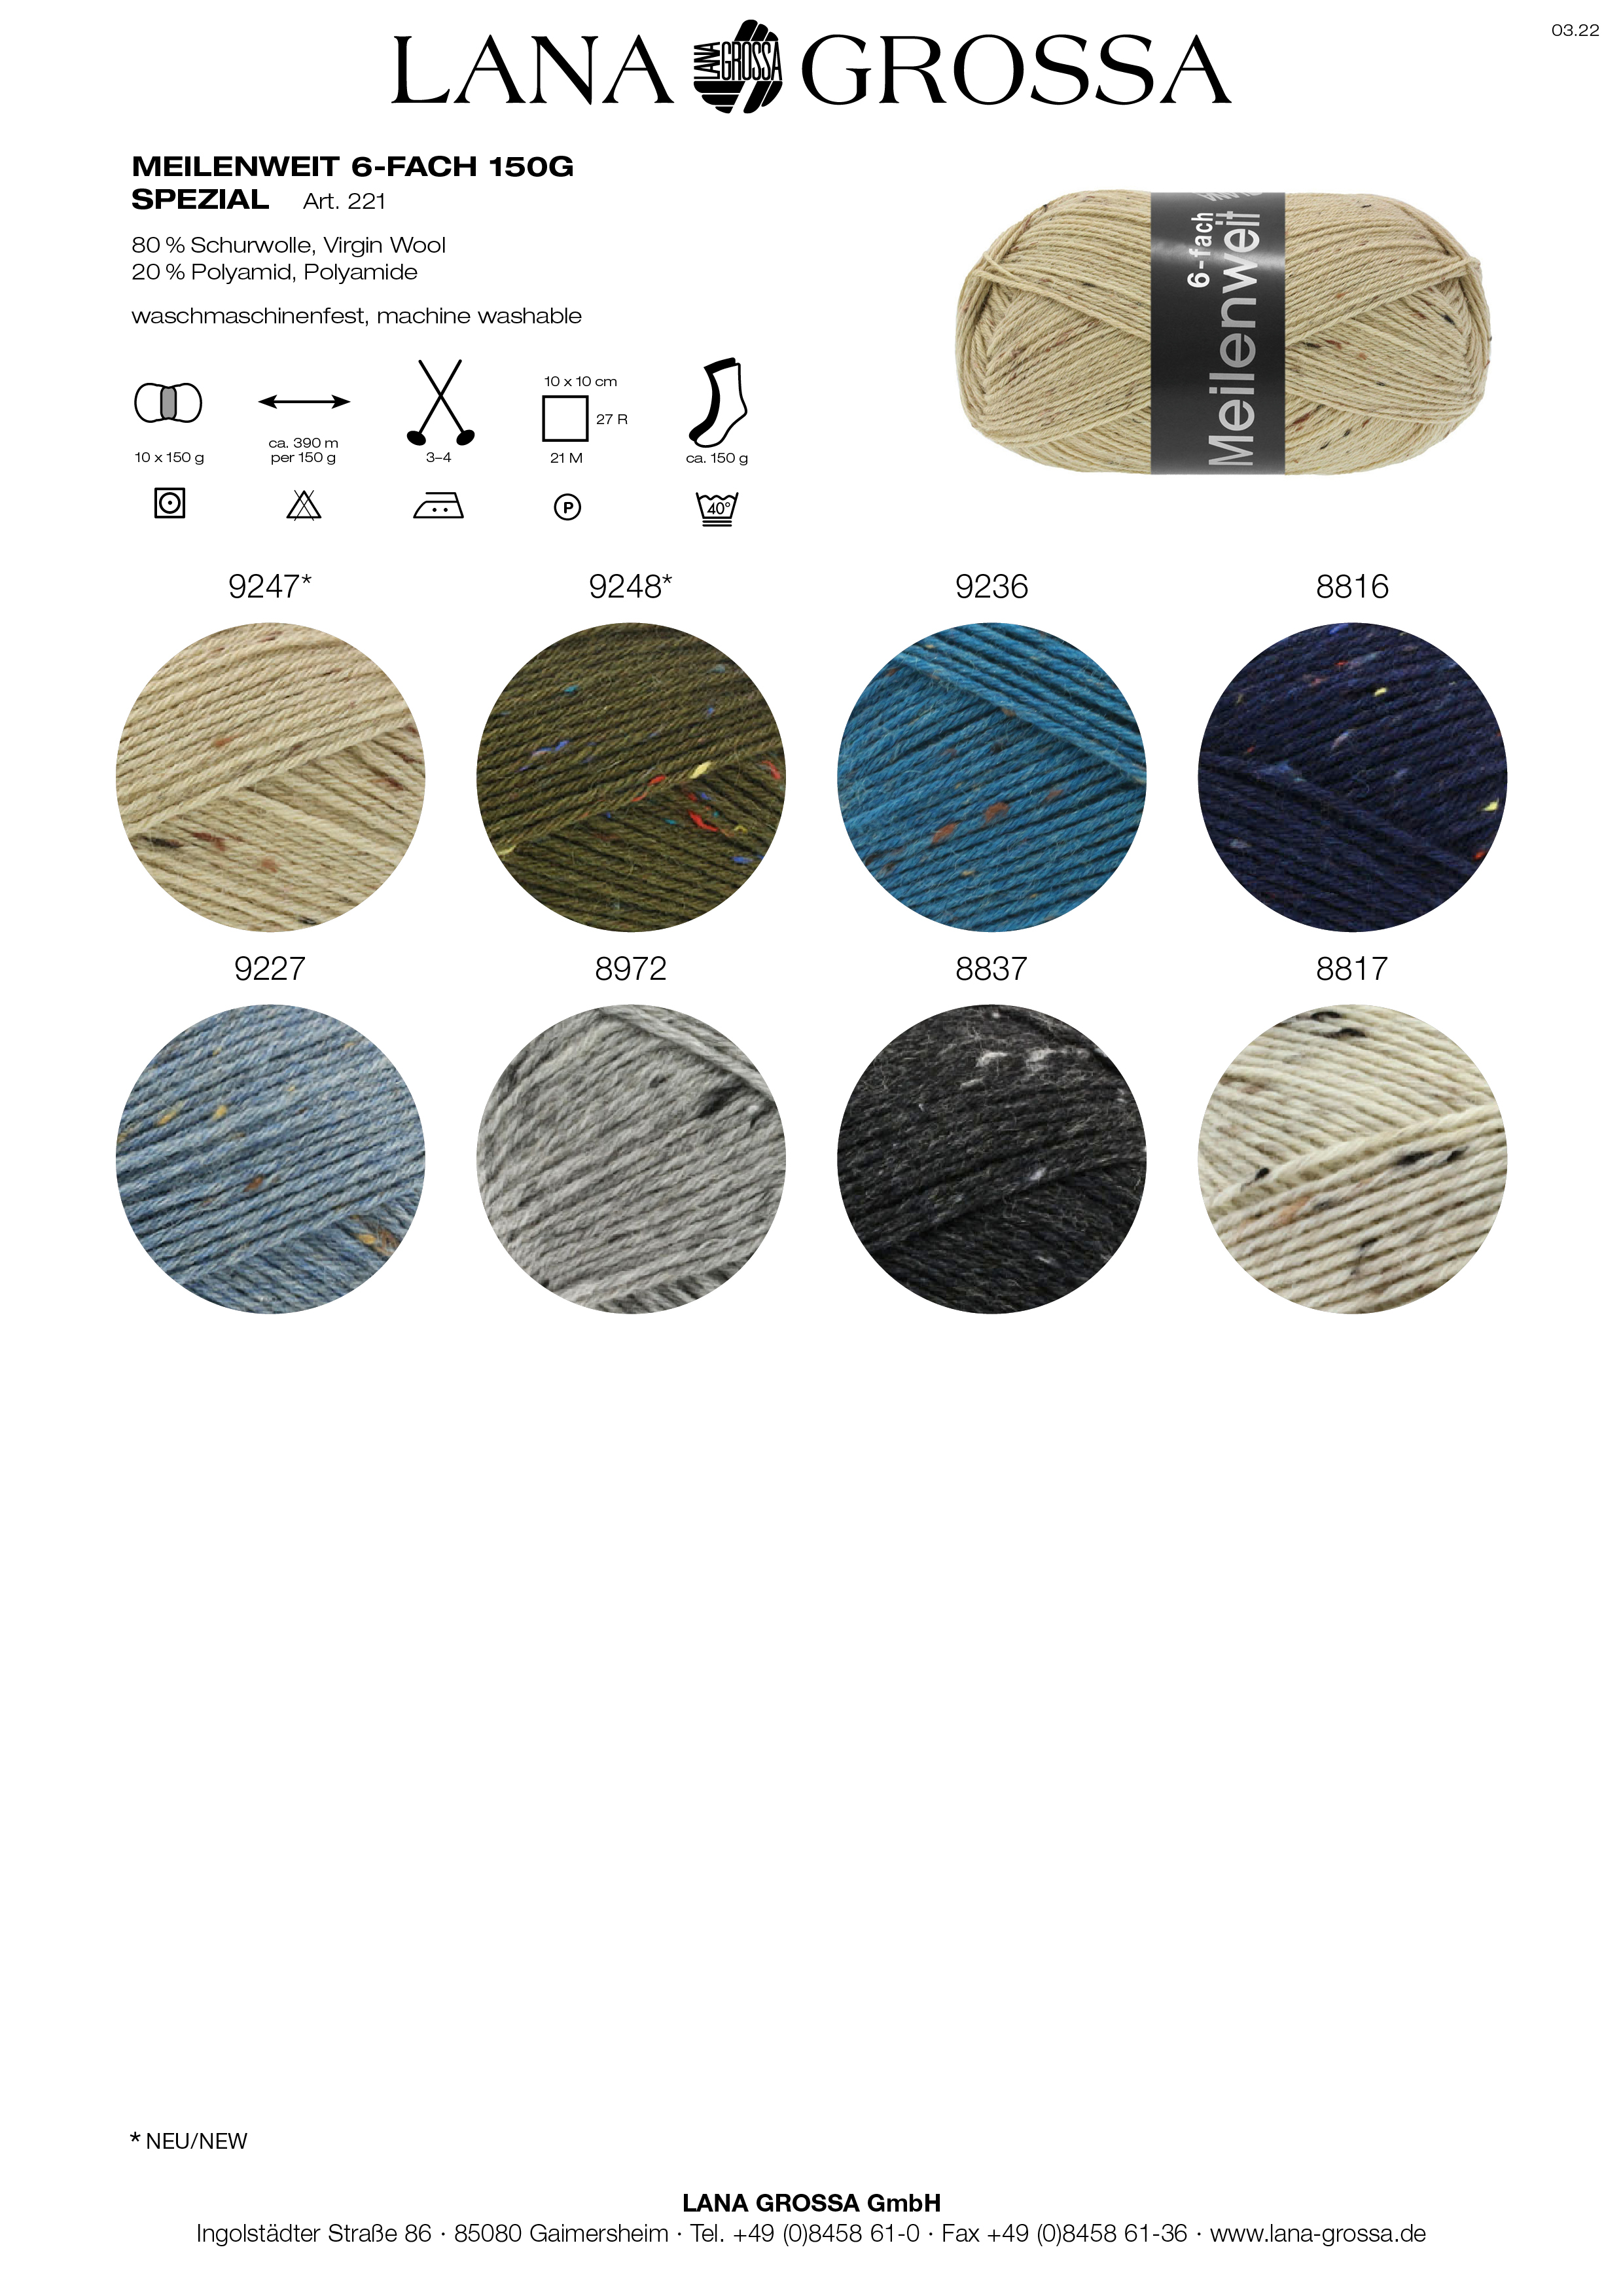 LANA GROSSA Meilenweit  Uni / Tweed  150g 6-fach Farbe  9246  helles graublau